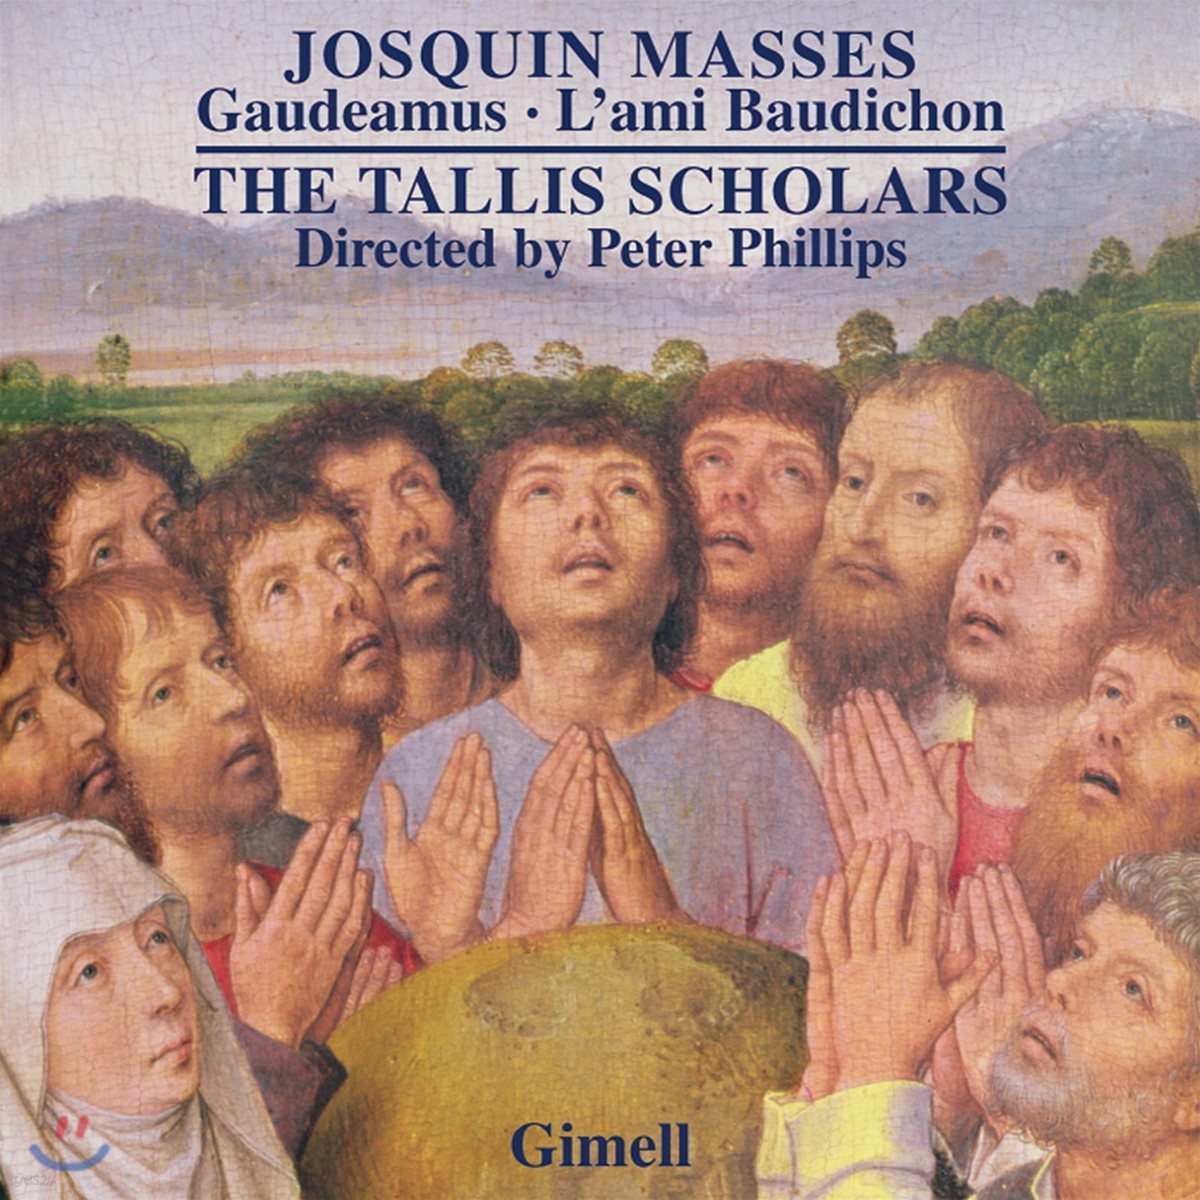 The Tallis Scholars 조스캥 데 프레: 미사 전곡 7집 - 가우데아무스, 미사 라미 보디숑 (Josquin des Pres: Masses - Gaudeamus, L'ami Baudichon)